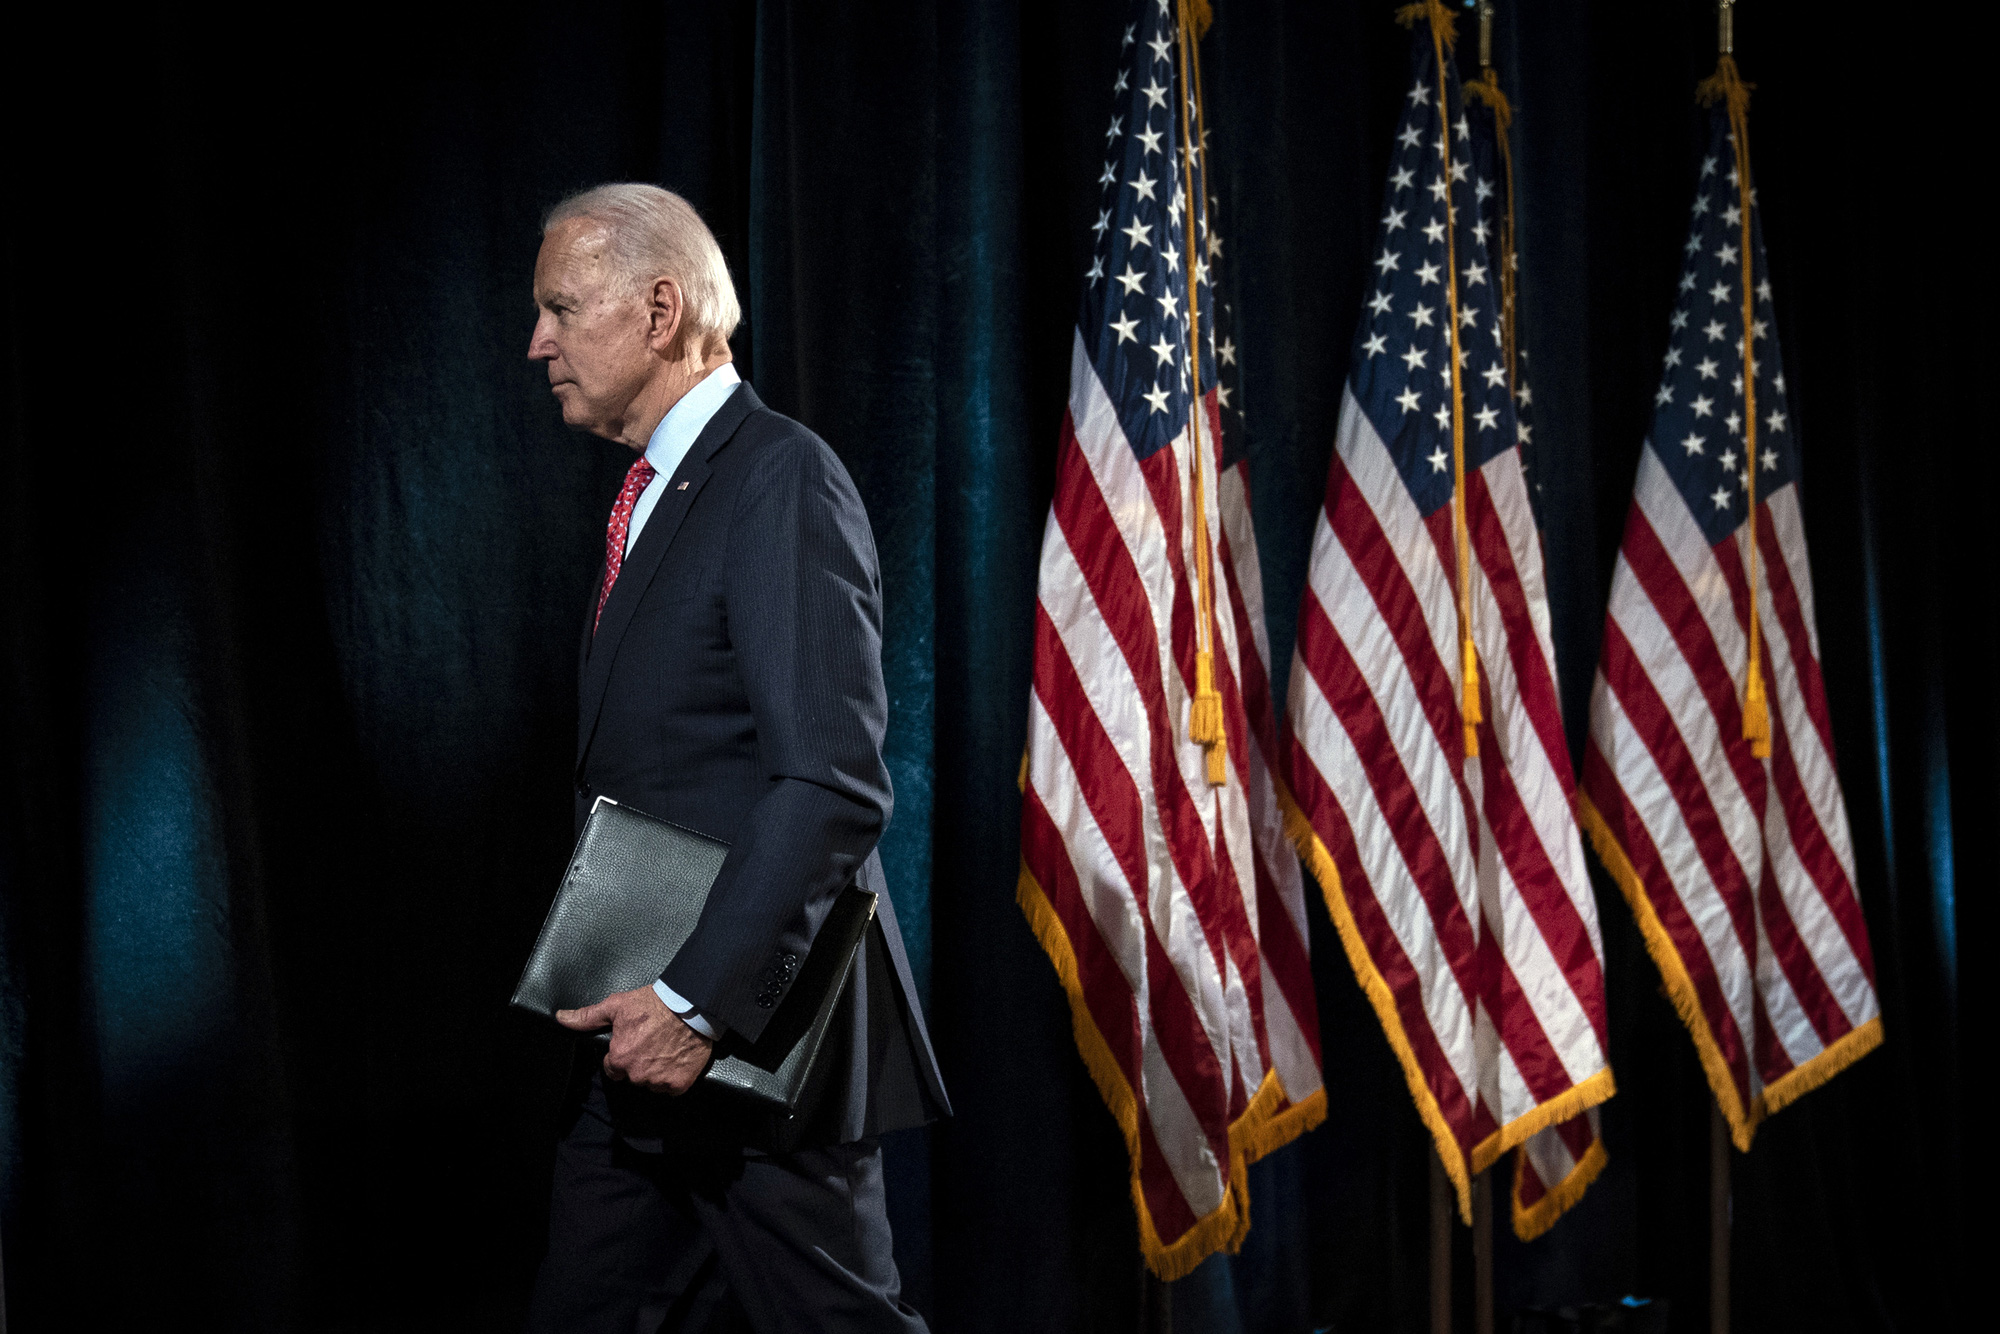 Nhà máy Malarkey: Bí mật tạo nên ưu thế cho Ứng cử viên Biden trong cuộc bầu cử Tổng thống Mỹ 2020 - Ảnh 4.